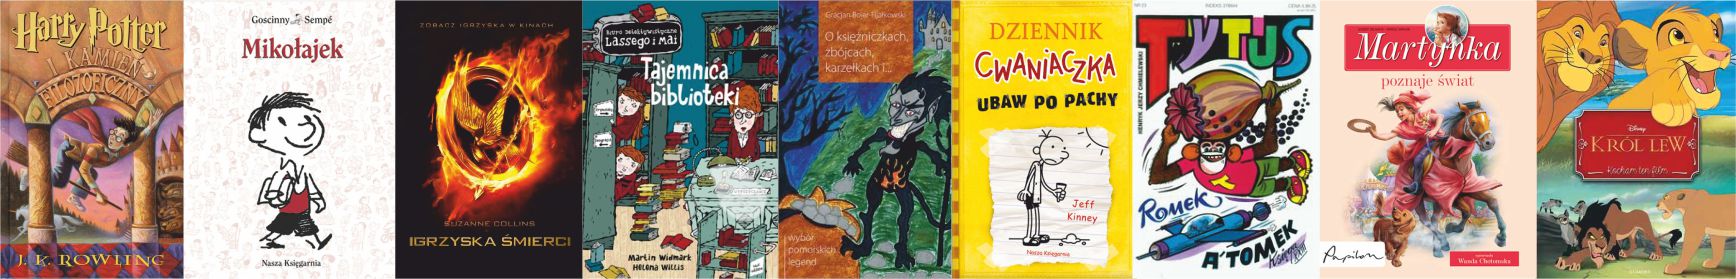 Literatura dla dzieci i młodzieży - collage okładek